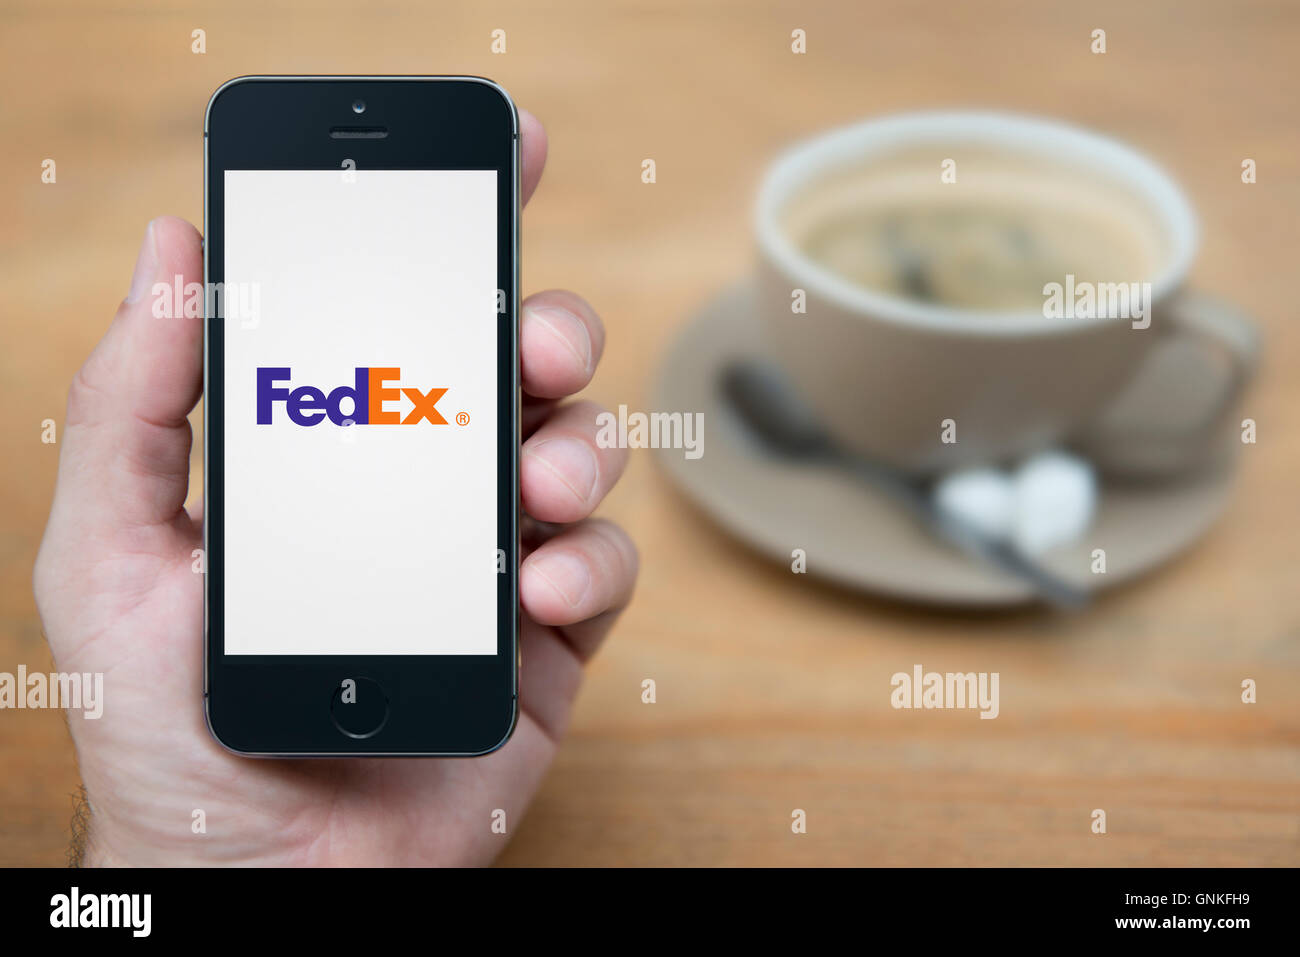 Un hombre mira el iPhone que muestra el logotipo de FedEx, mientras se sentó con una taza de café (uso Editorial solamente). Foto de stock